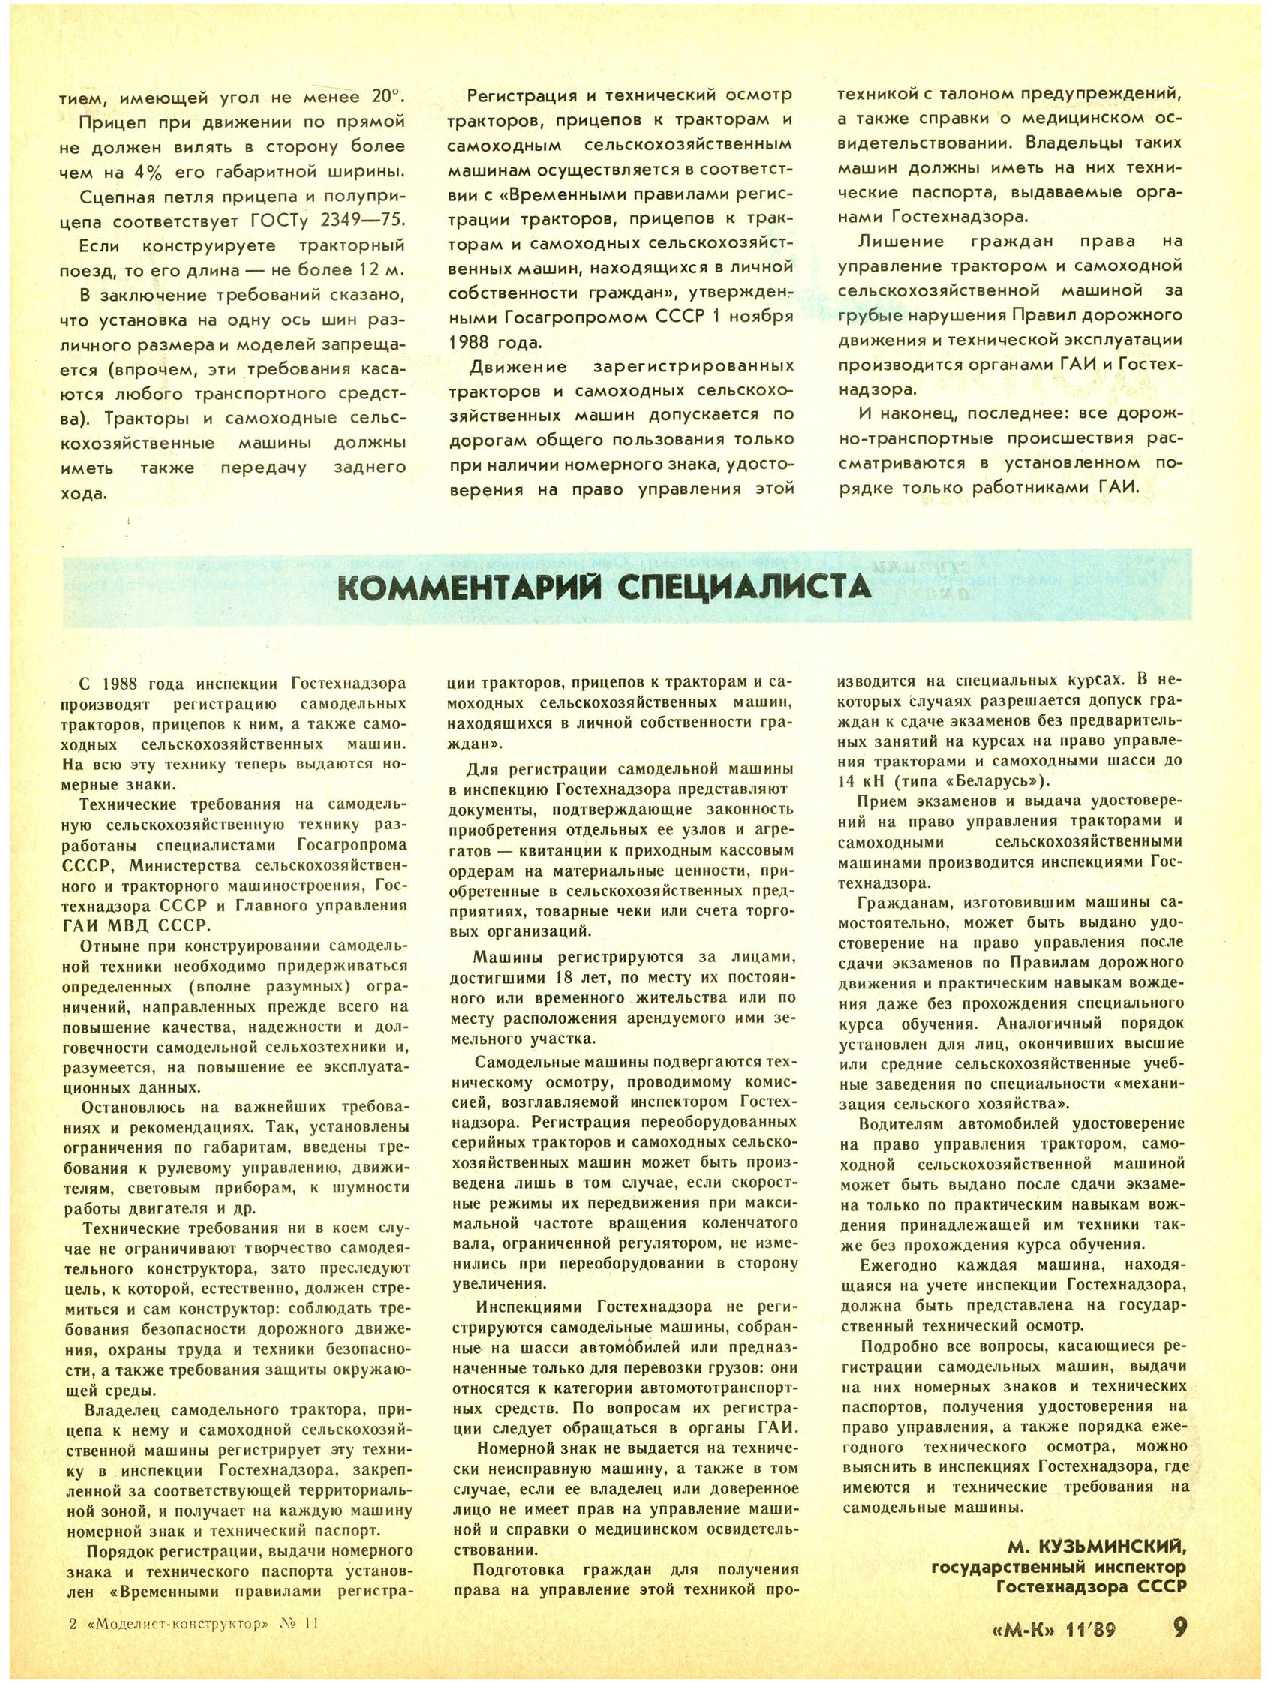 МК 11, 1989, 9 c.